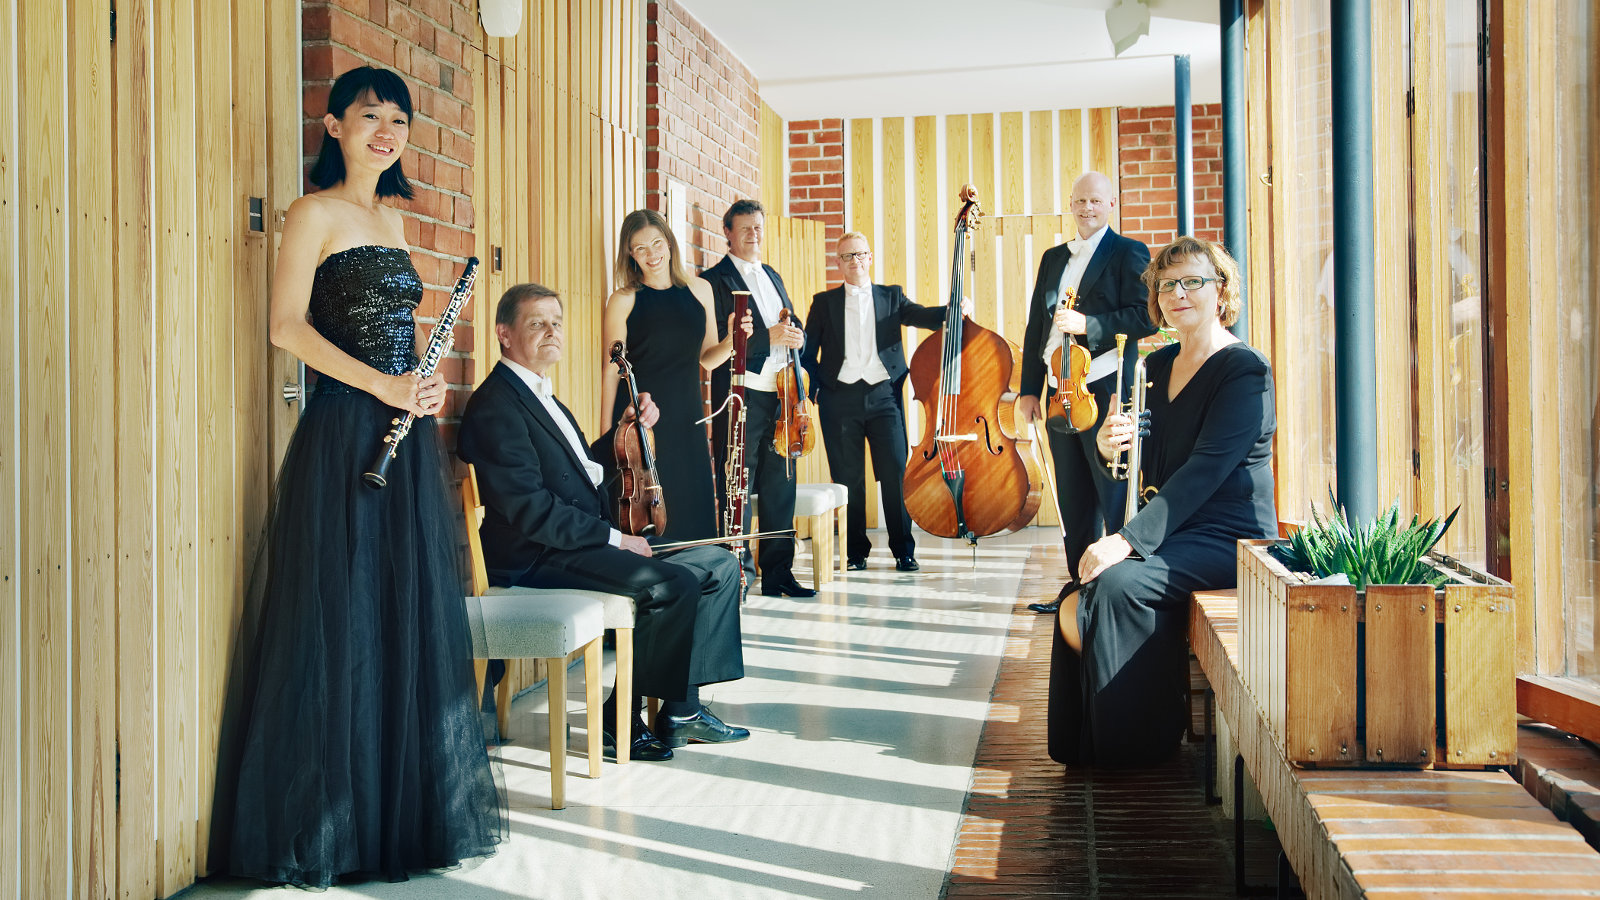 Kuvassa on Jyväskylä Sinfonia käytävässä ja orkesterin jäsenet seisovat.  Kaikilla on esiintymisasut päällä.  